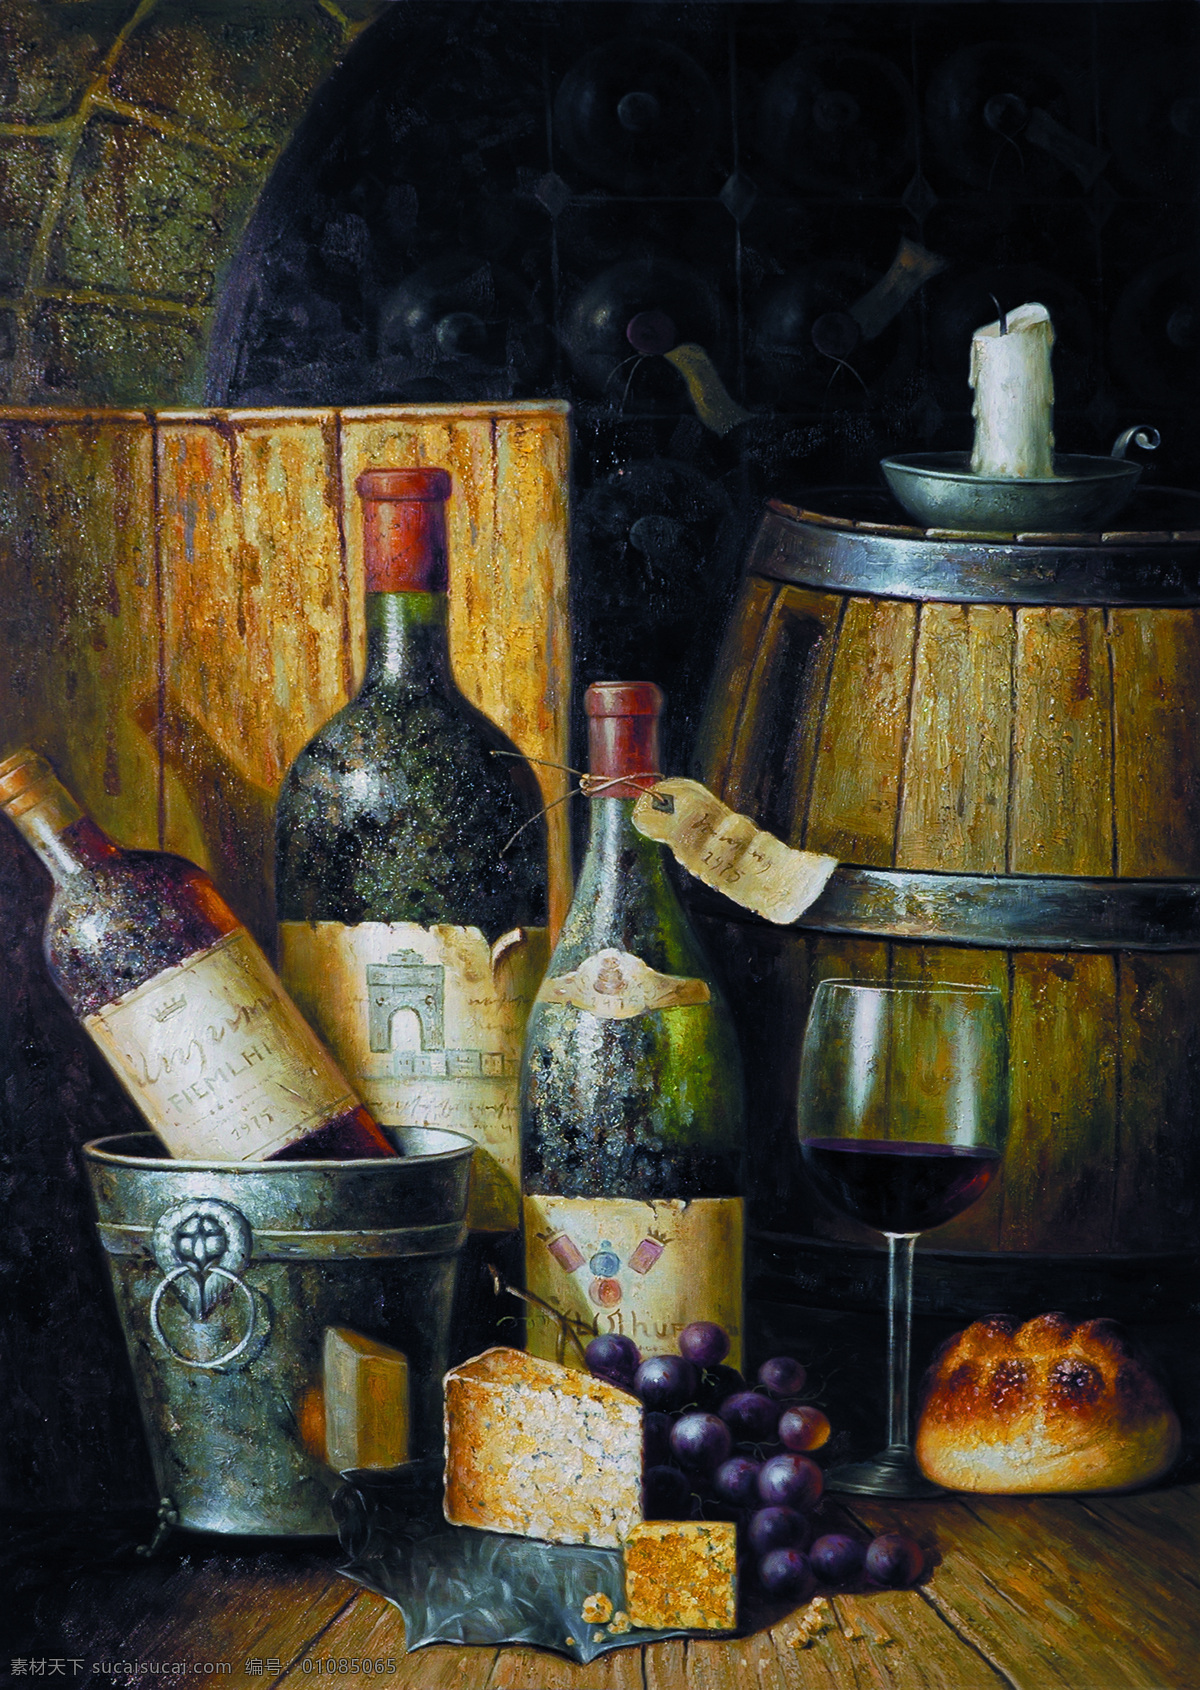 葡萄酒 静物 油画 酒瓶 高脚杯 玻璃酒杯 木桶 奶酪 油画写生 绘画艺术 装饰画 无框画 其他艺术 文化艺术 黑色